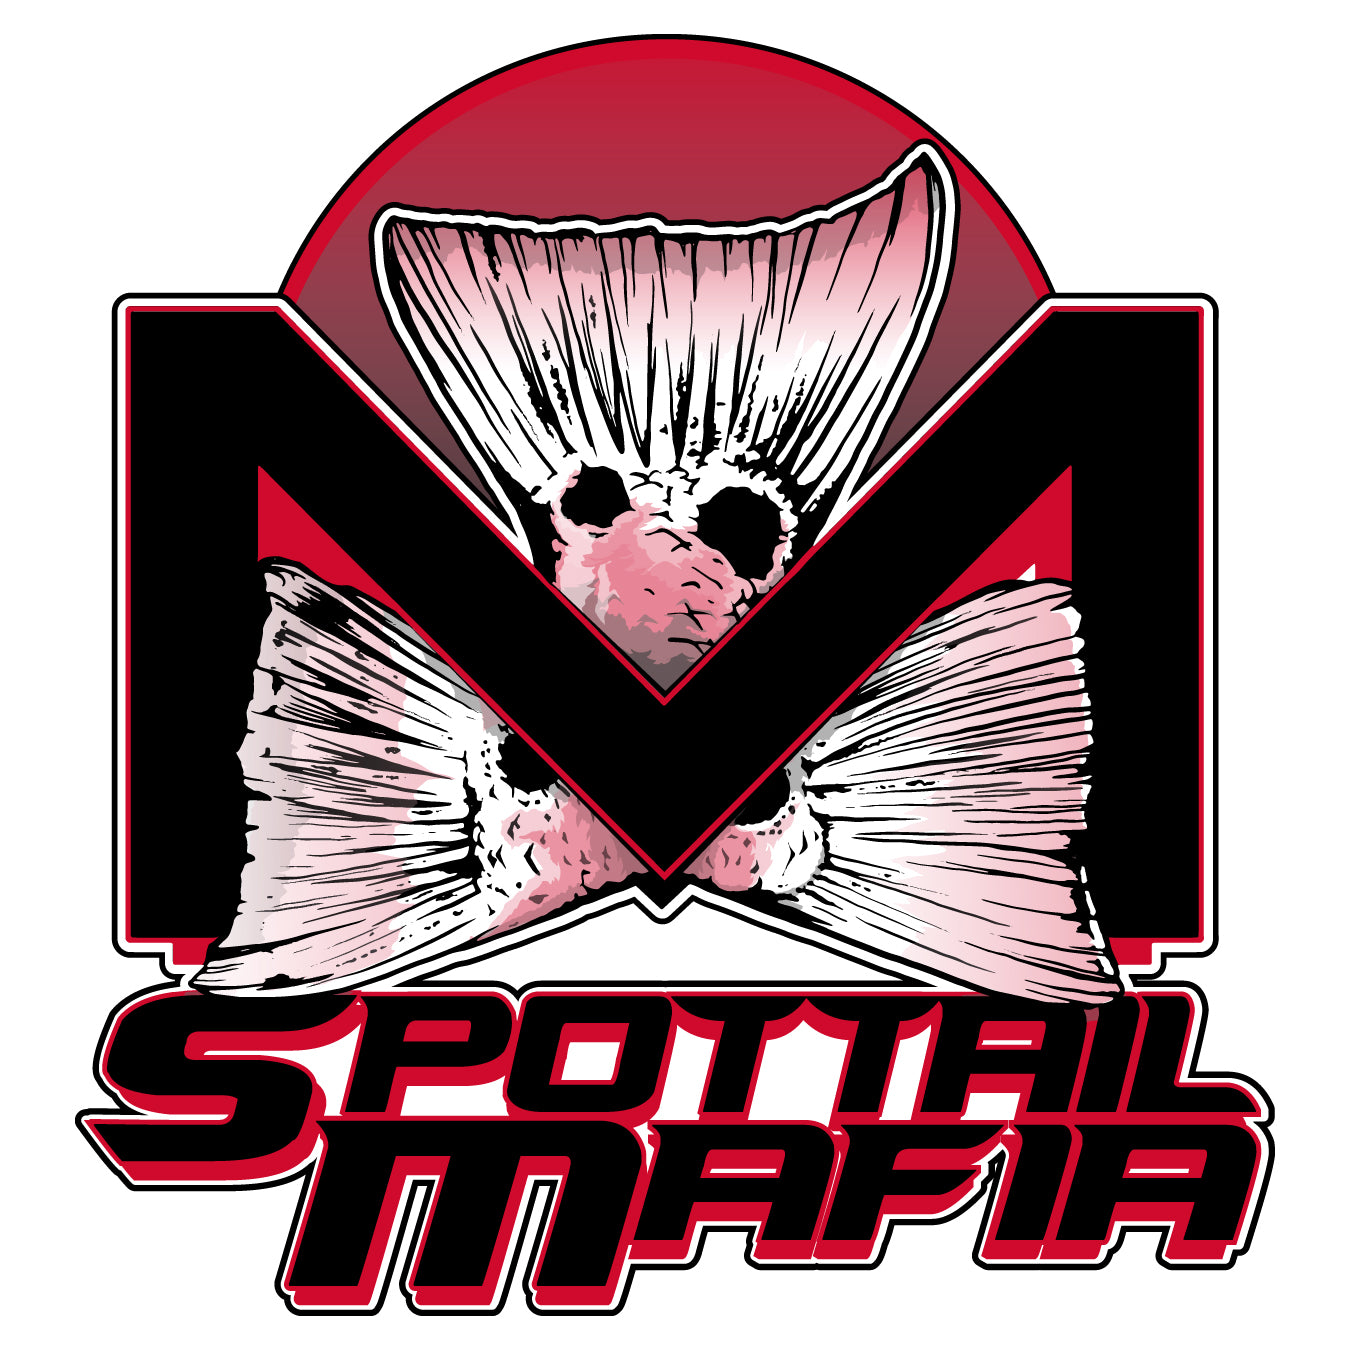 SpotTail Mafia